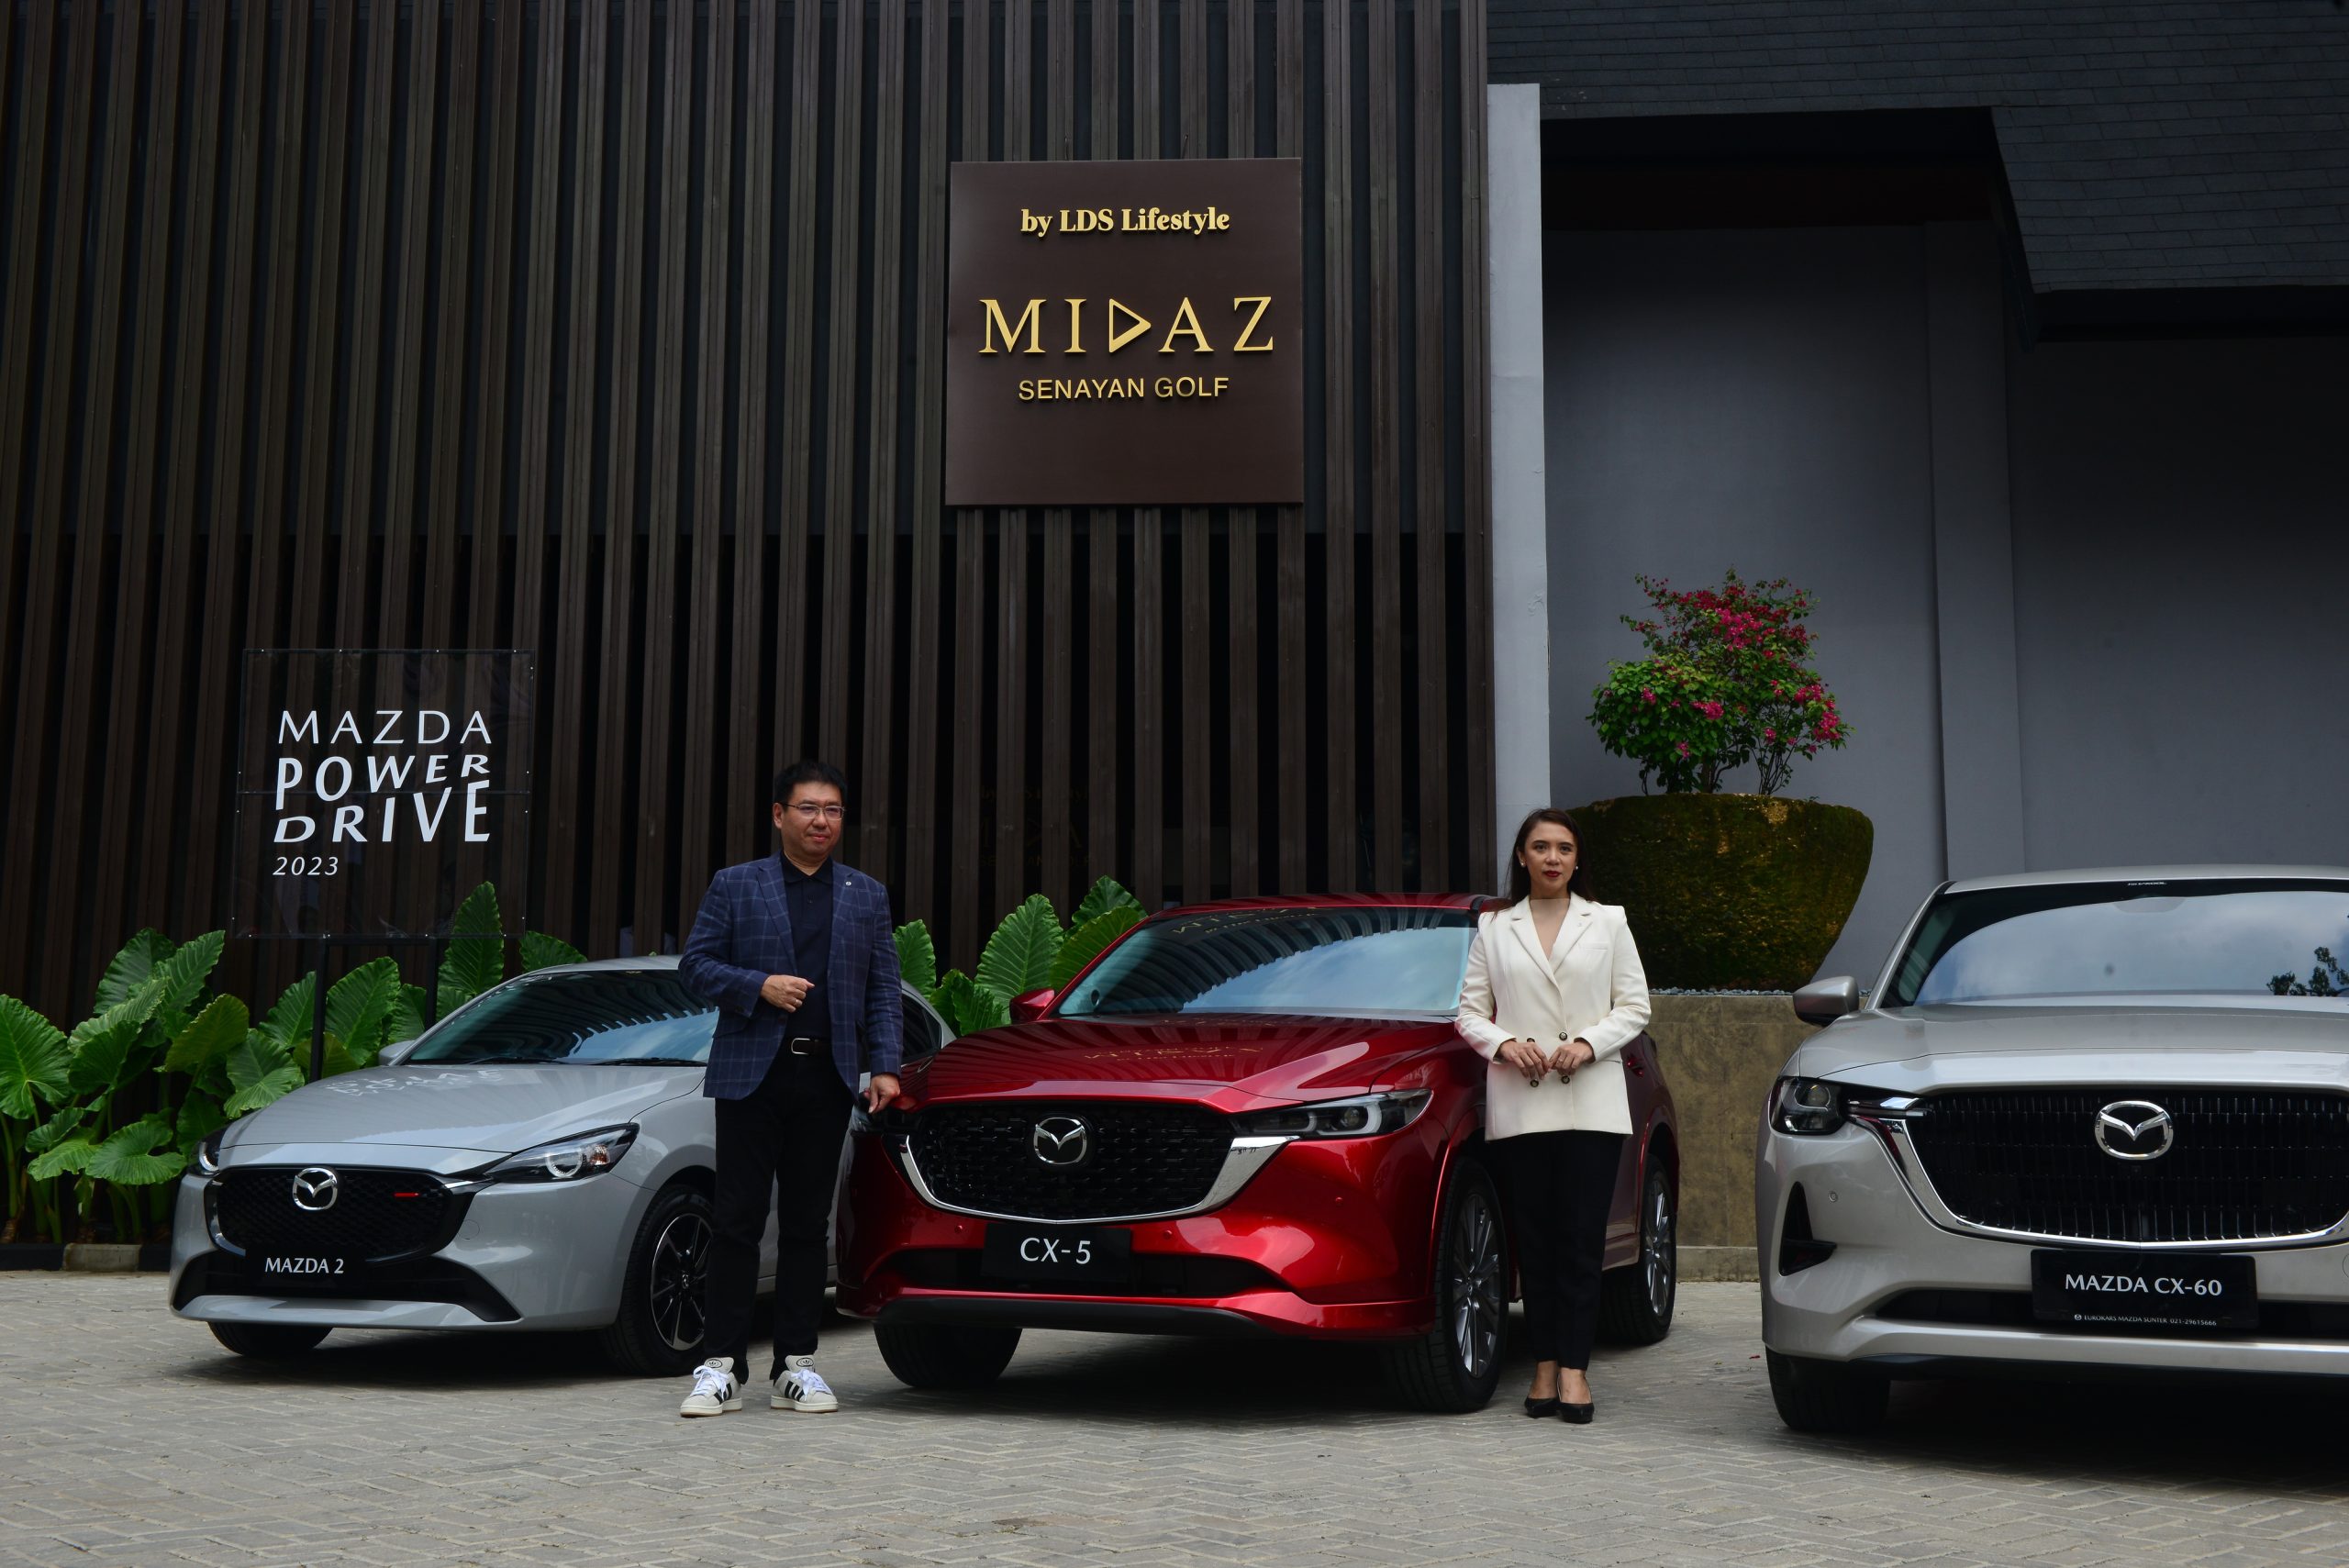 Mazda Power Drive 2023 Kembali Hadir di Jakarta 9-10 November Mendatang!